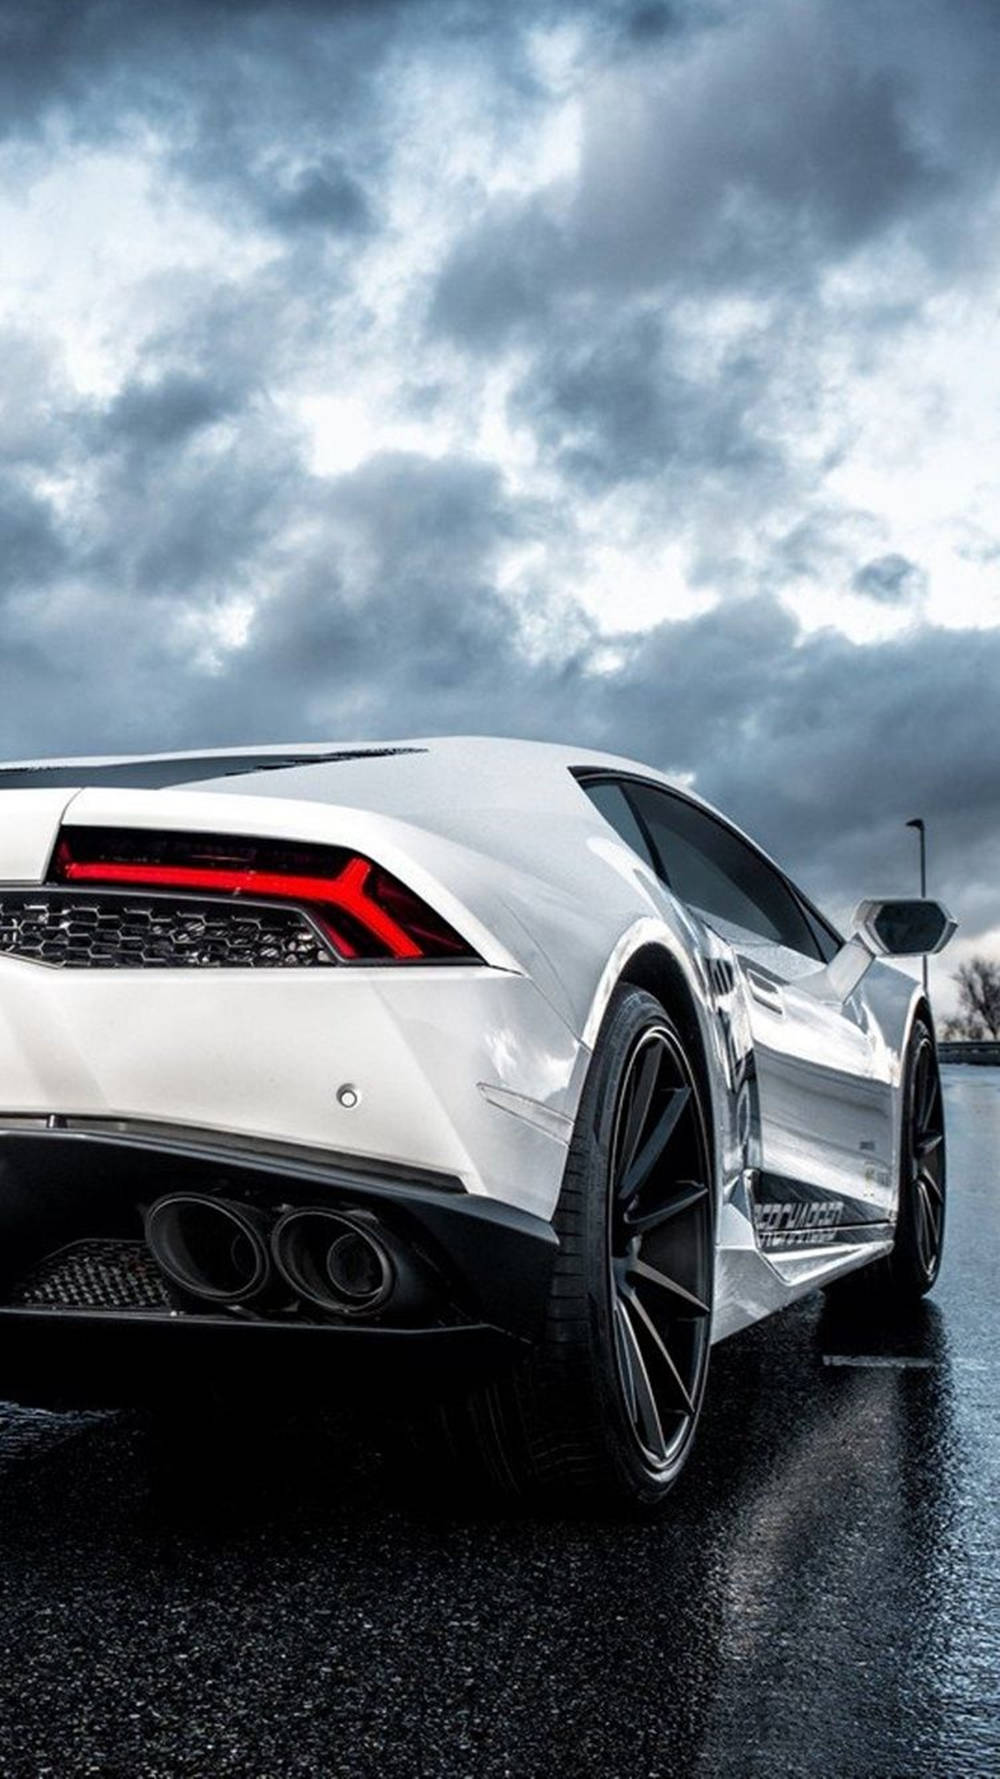 Lamborghini Iphone White Car And Dark Clouds Background